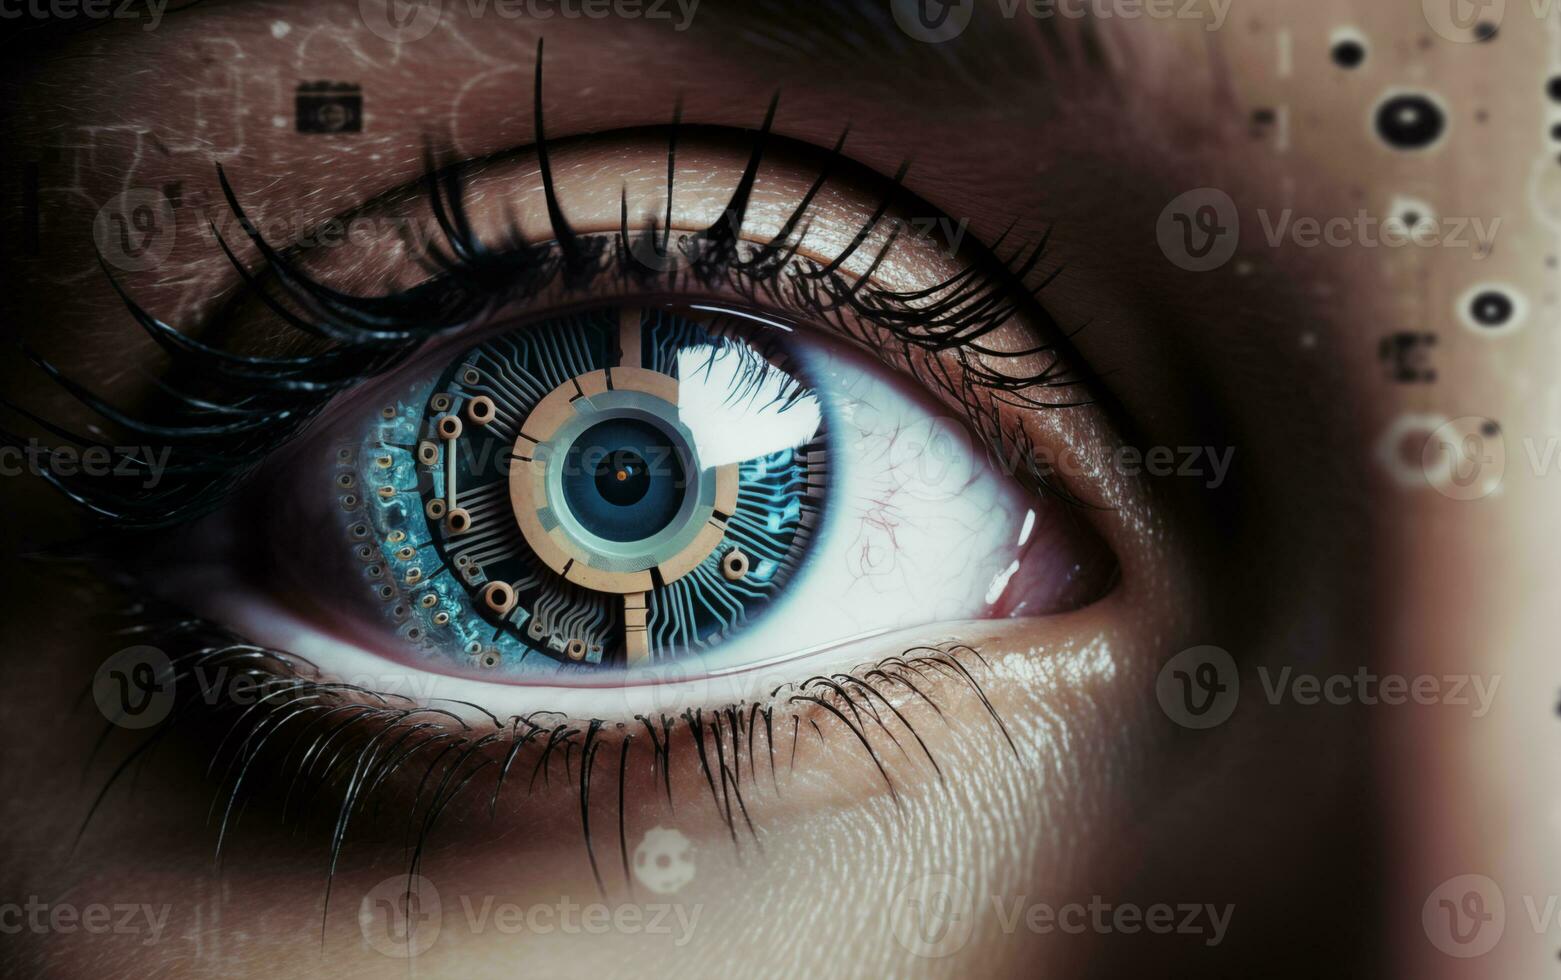 ai généré le cybernétique œil de artificiel intelligence se transforme Humain vision photo